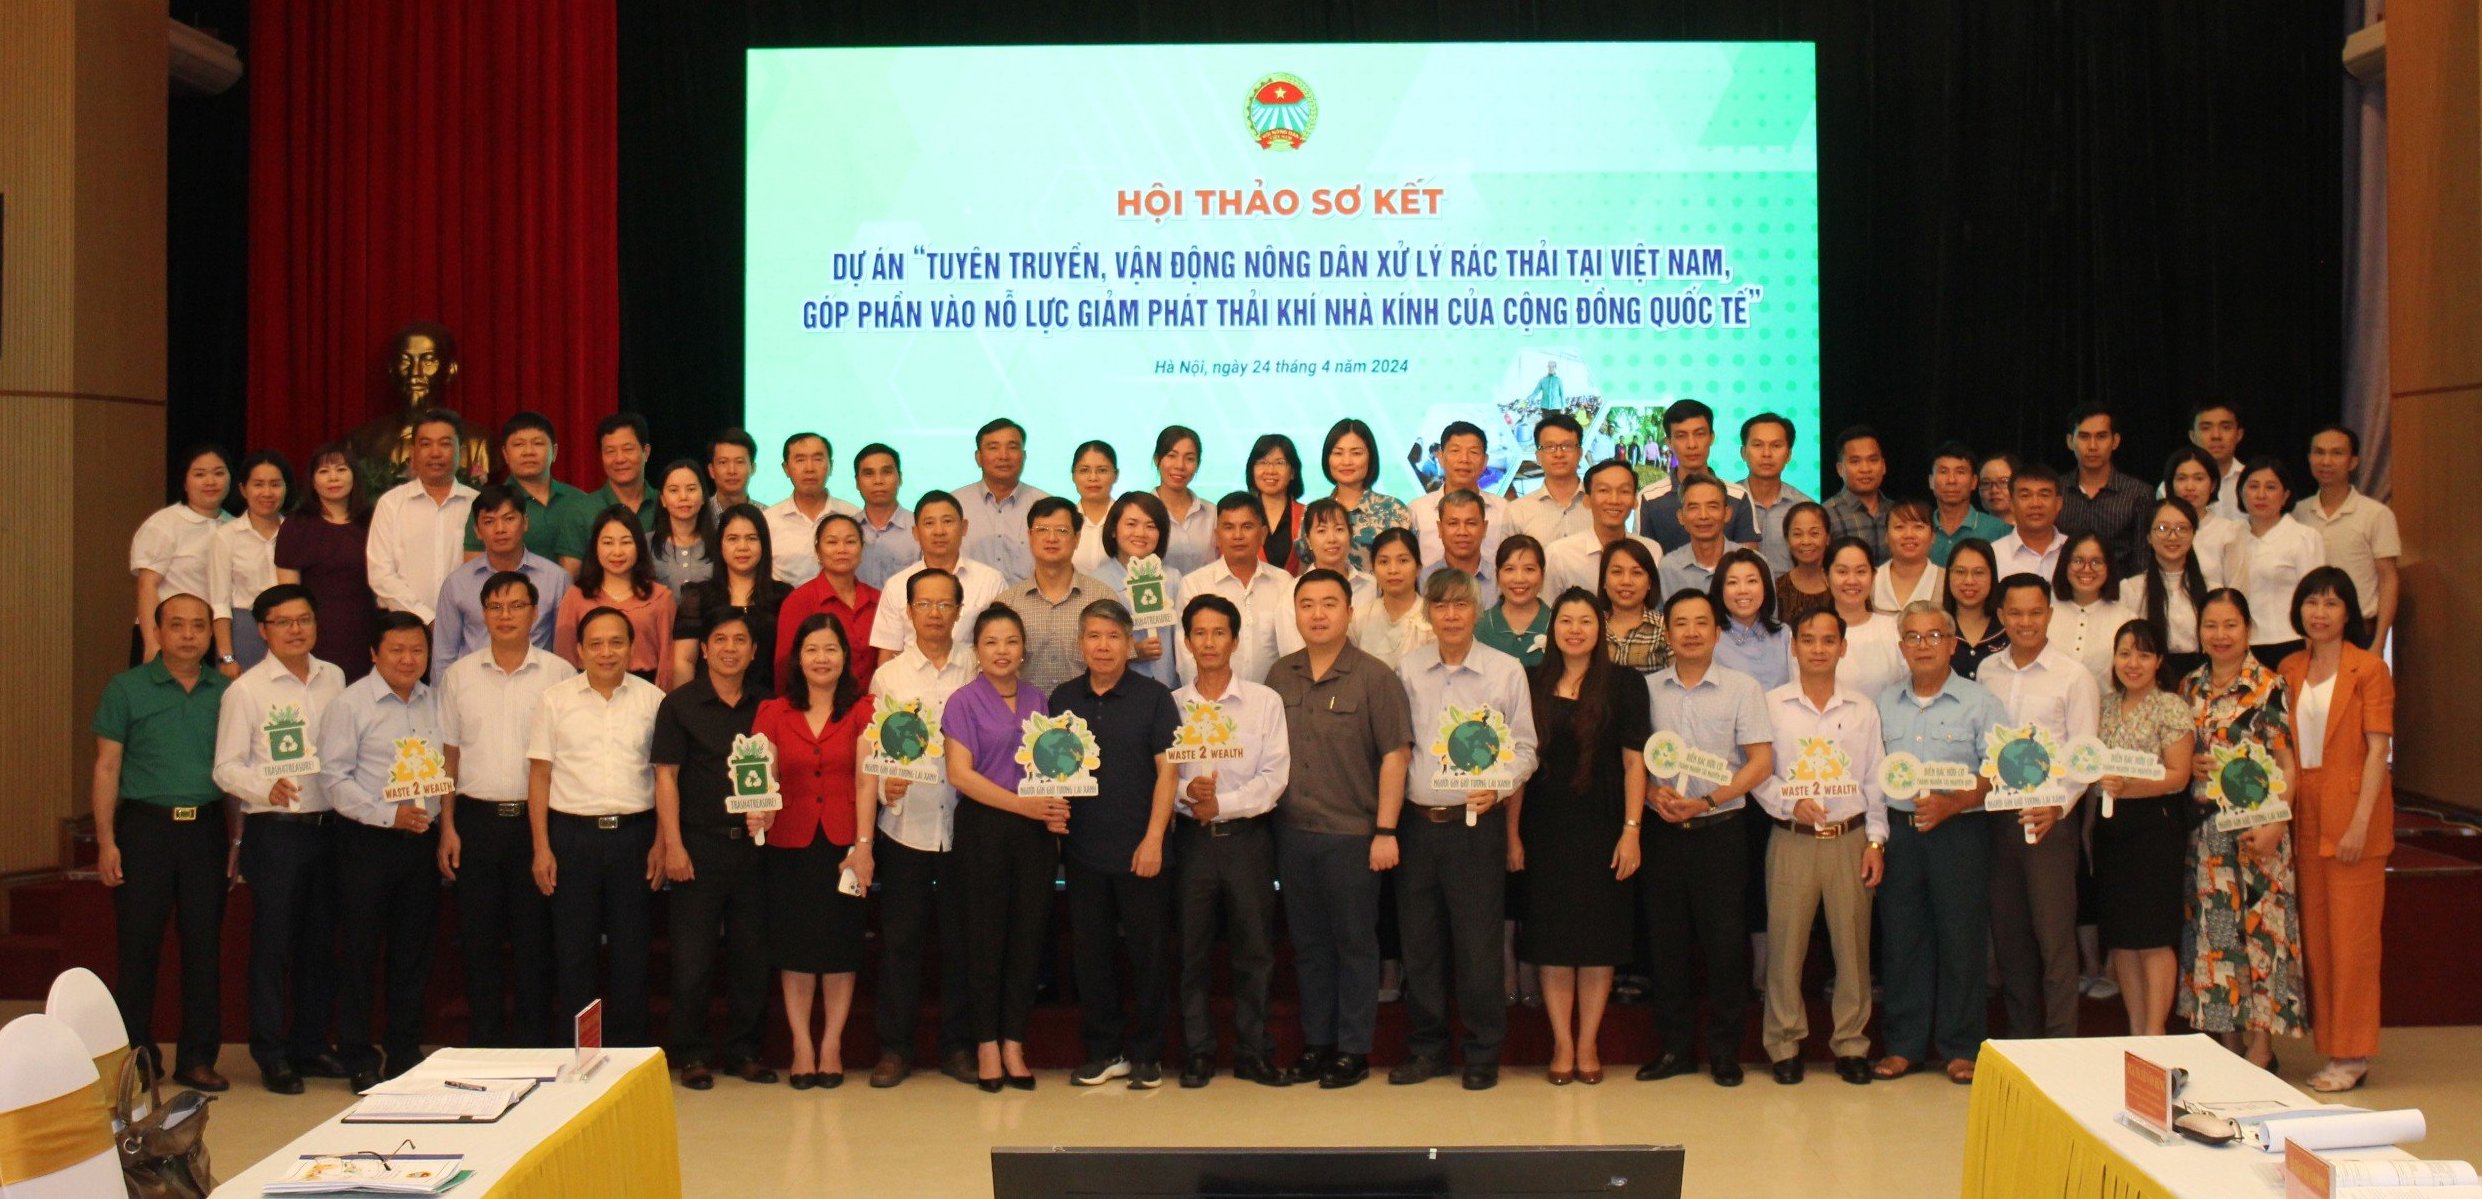 Hội NDVN sơ kết Dự án tuyên truyền, vận động nông dân xử lý rác thải tại Việt Nam: Hơn 8.000 mô hình hiệu quả- Ảnh 5.